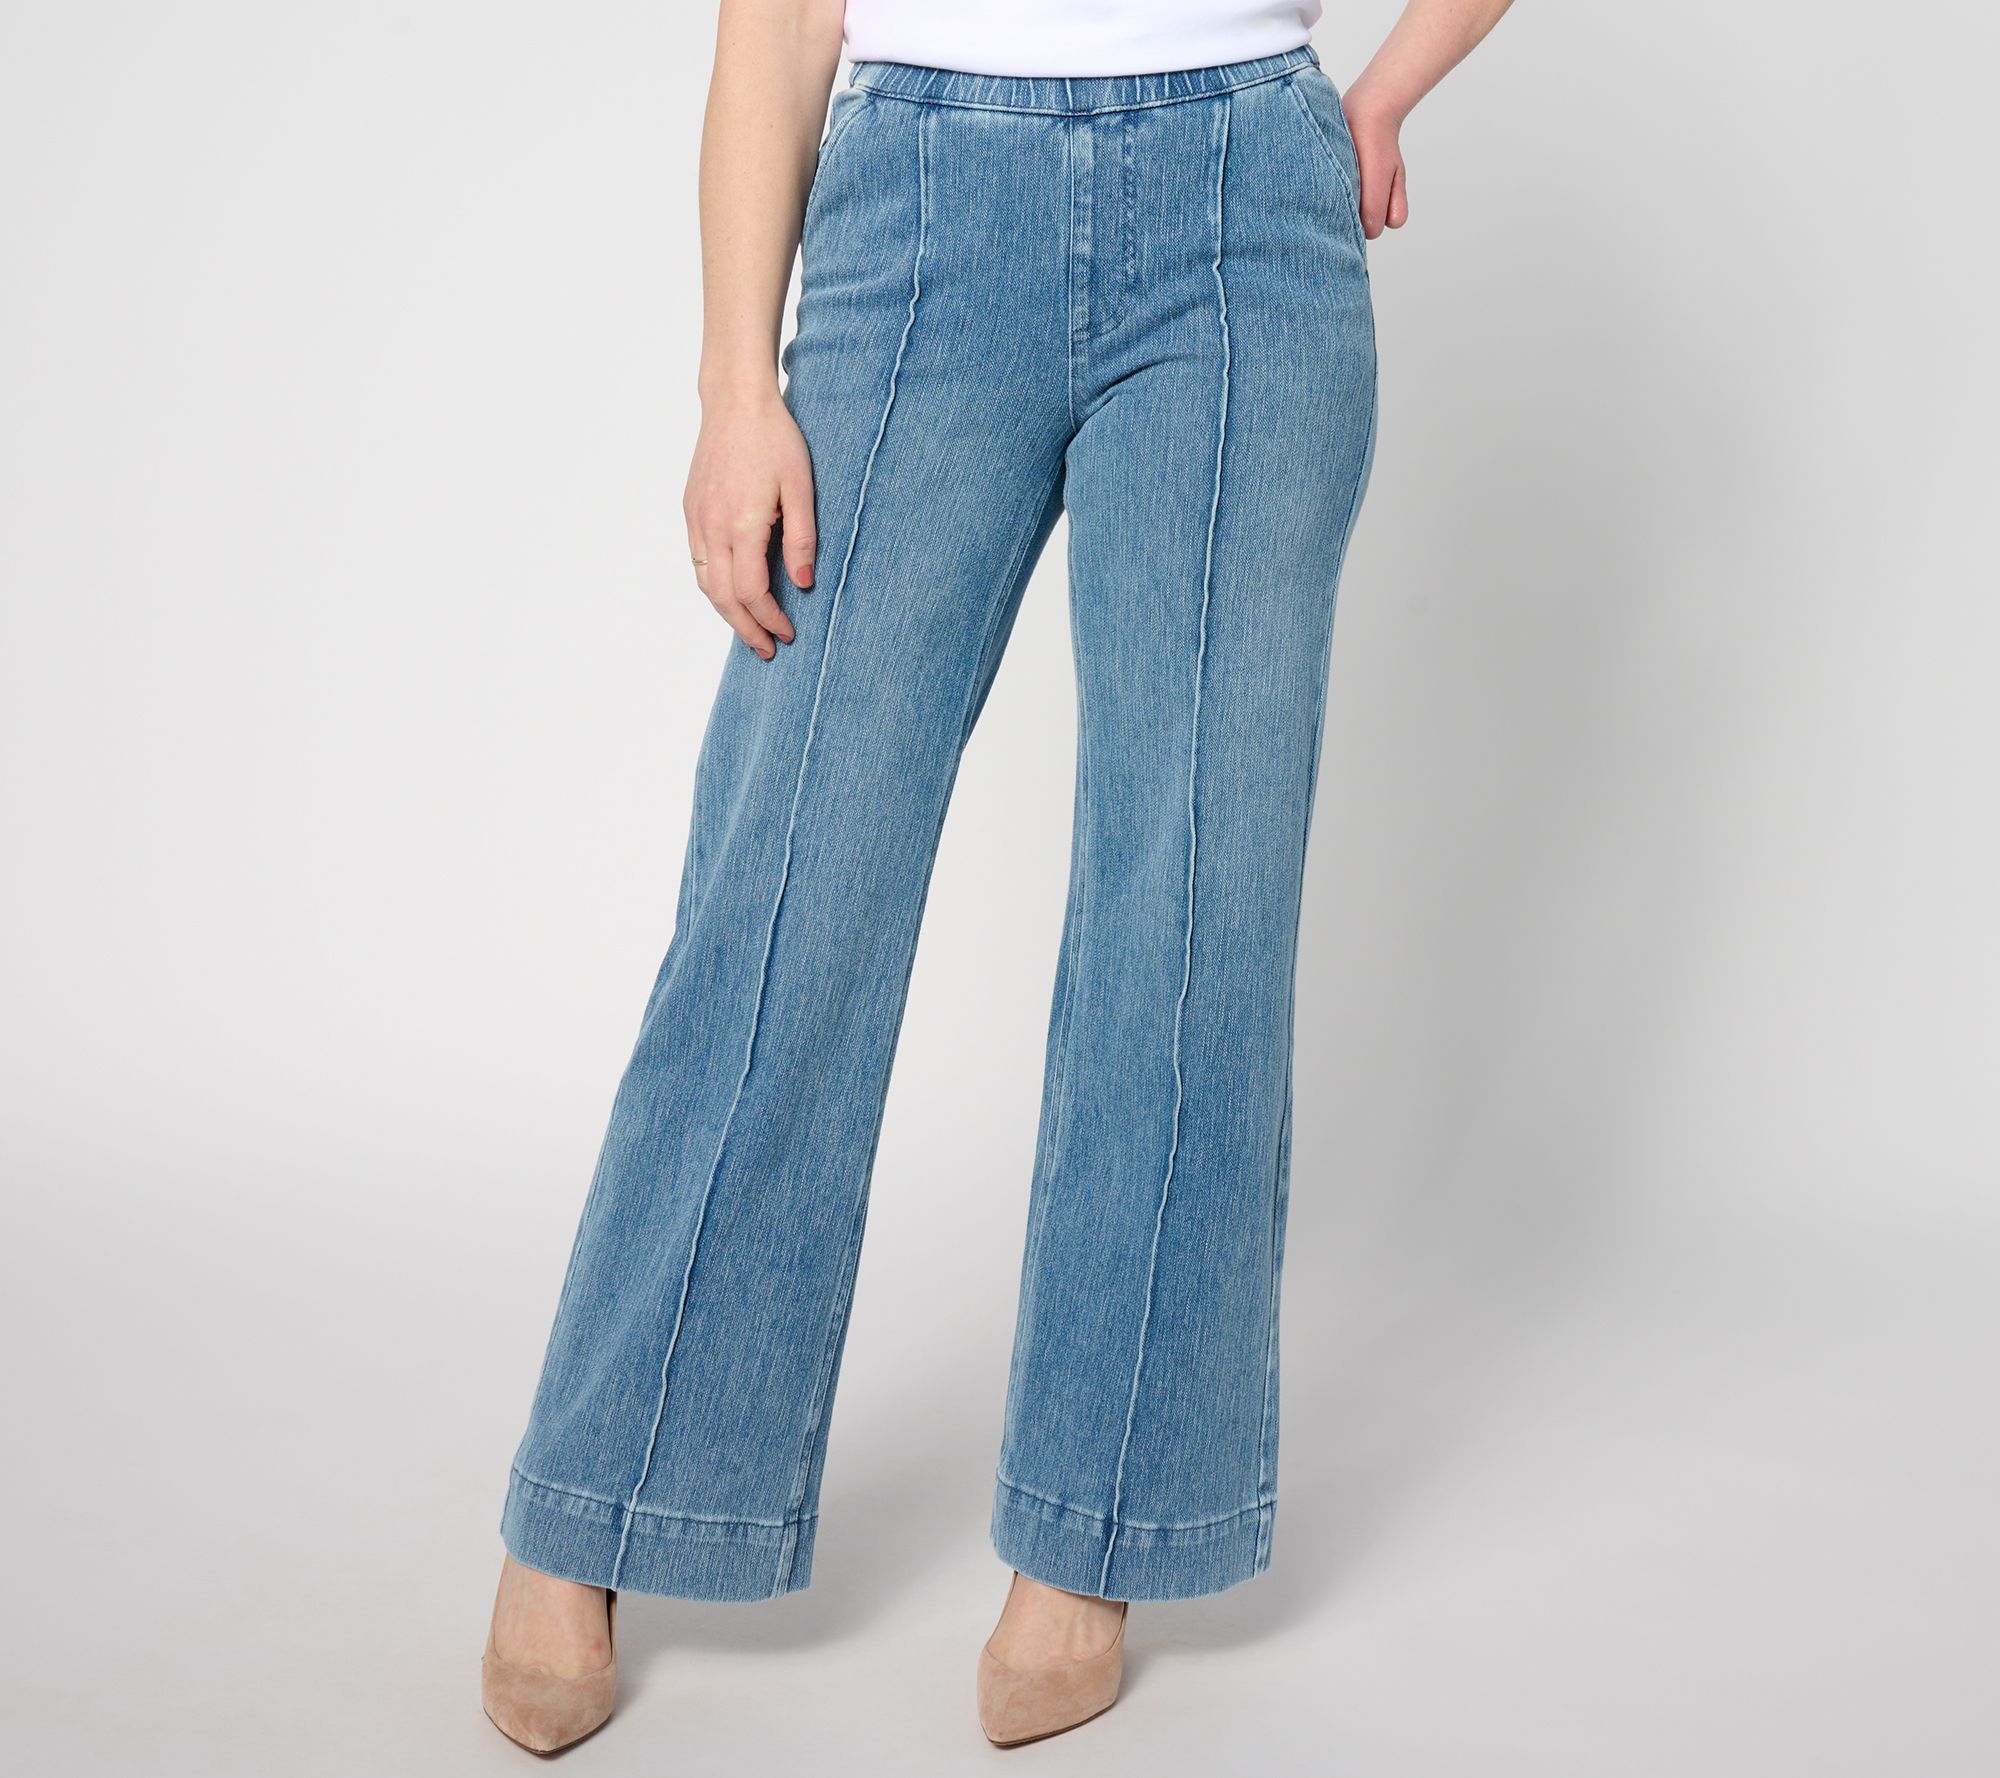 Gloria Vanderbilt Amanda Pull-On Jeans- Black Rinse